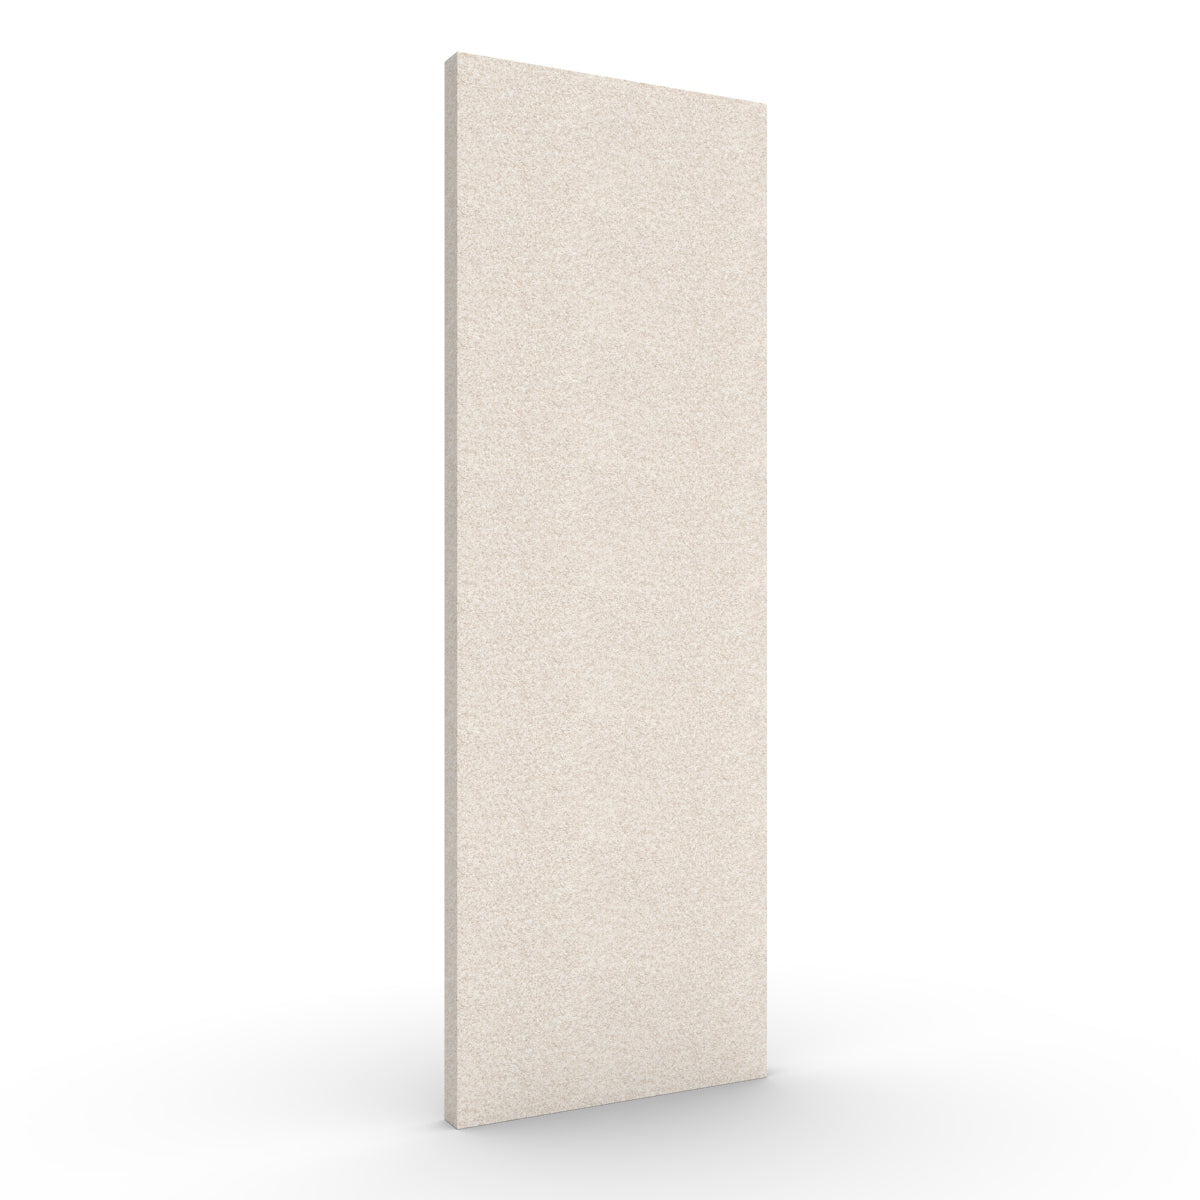 Basic wall sound absorber in natural beige. Size 58cmx174cm. Akustikkplater og lyddemping vegg